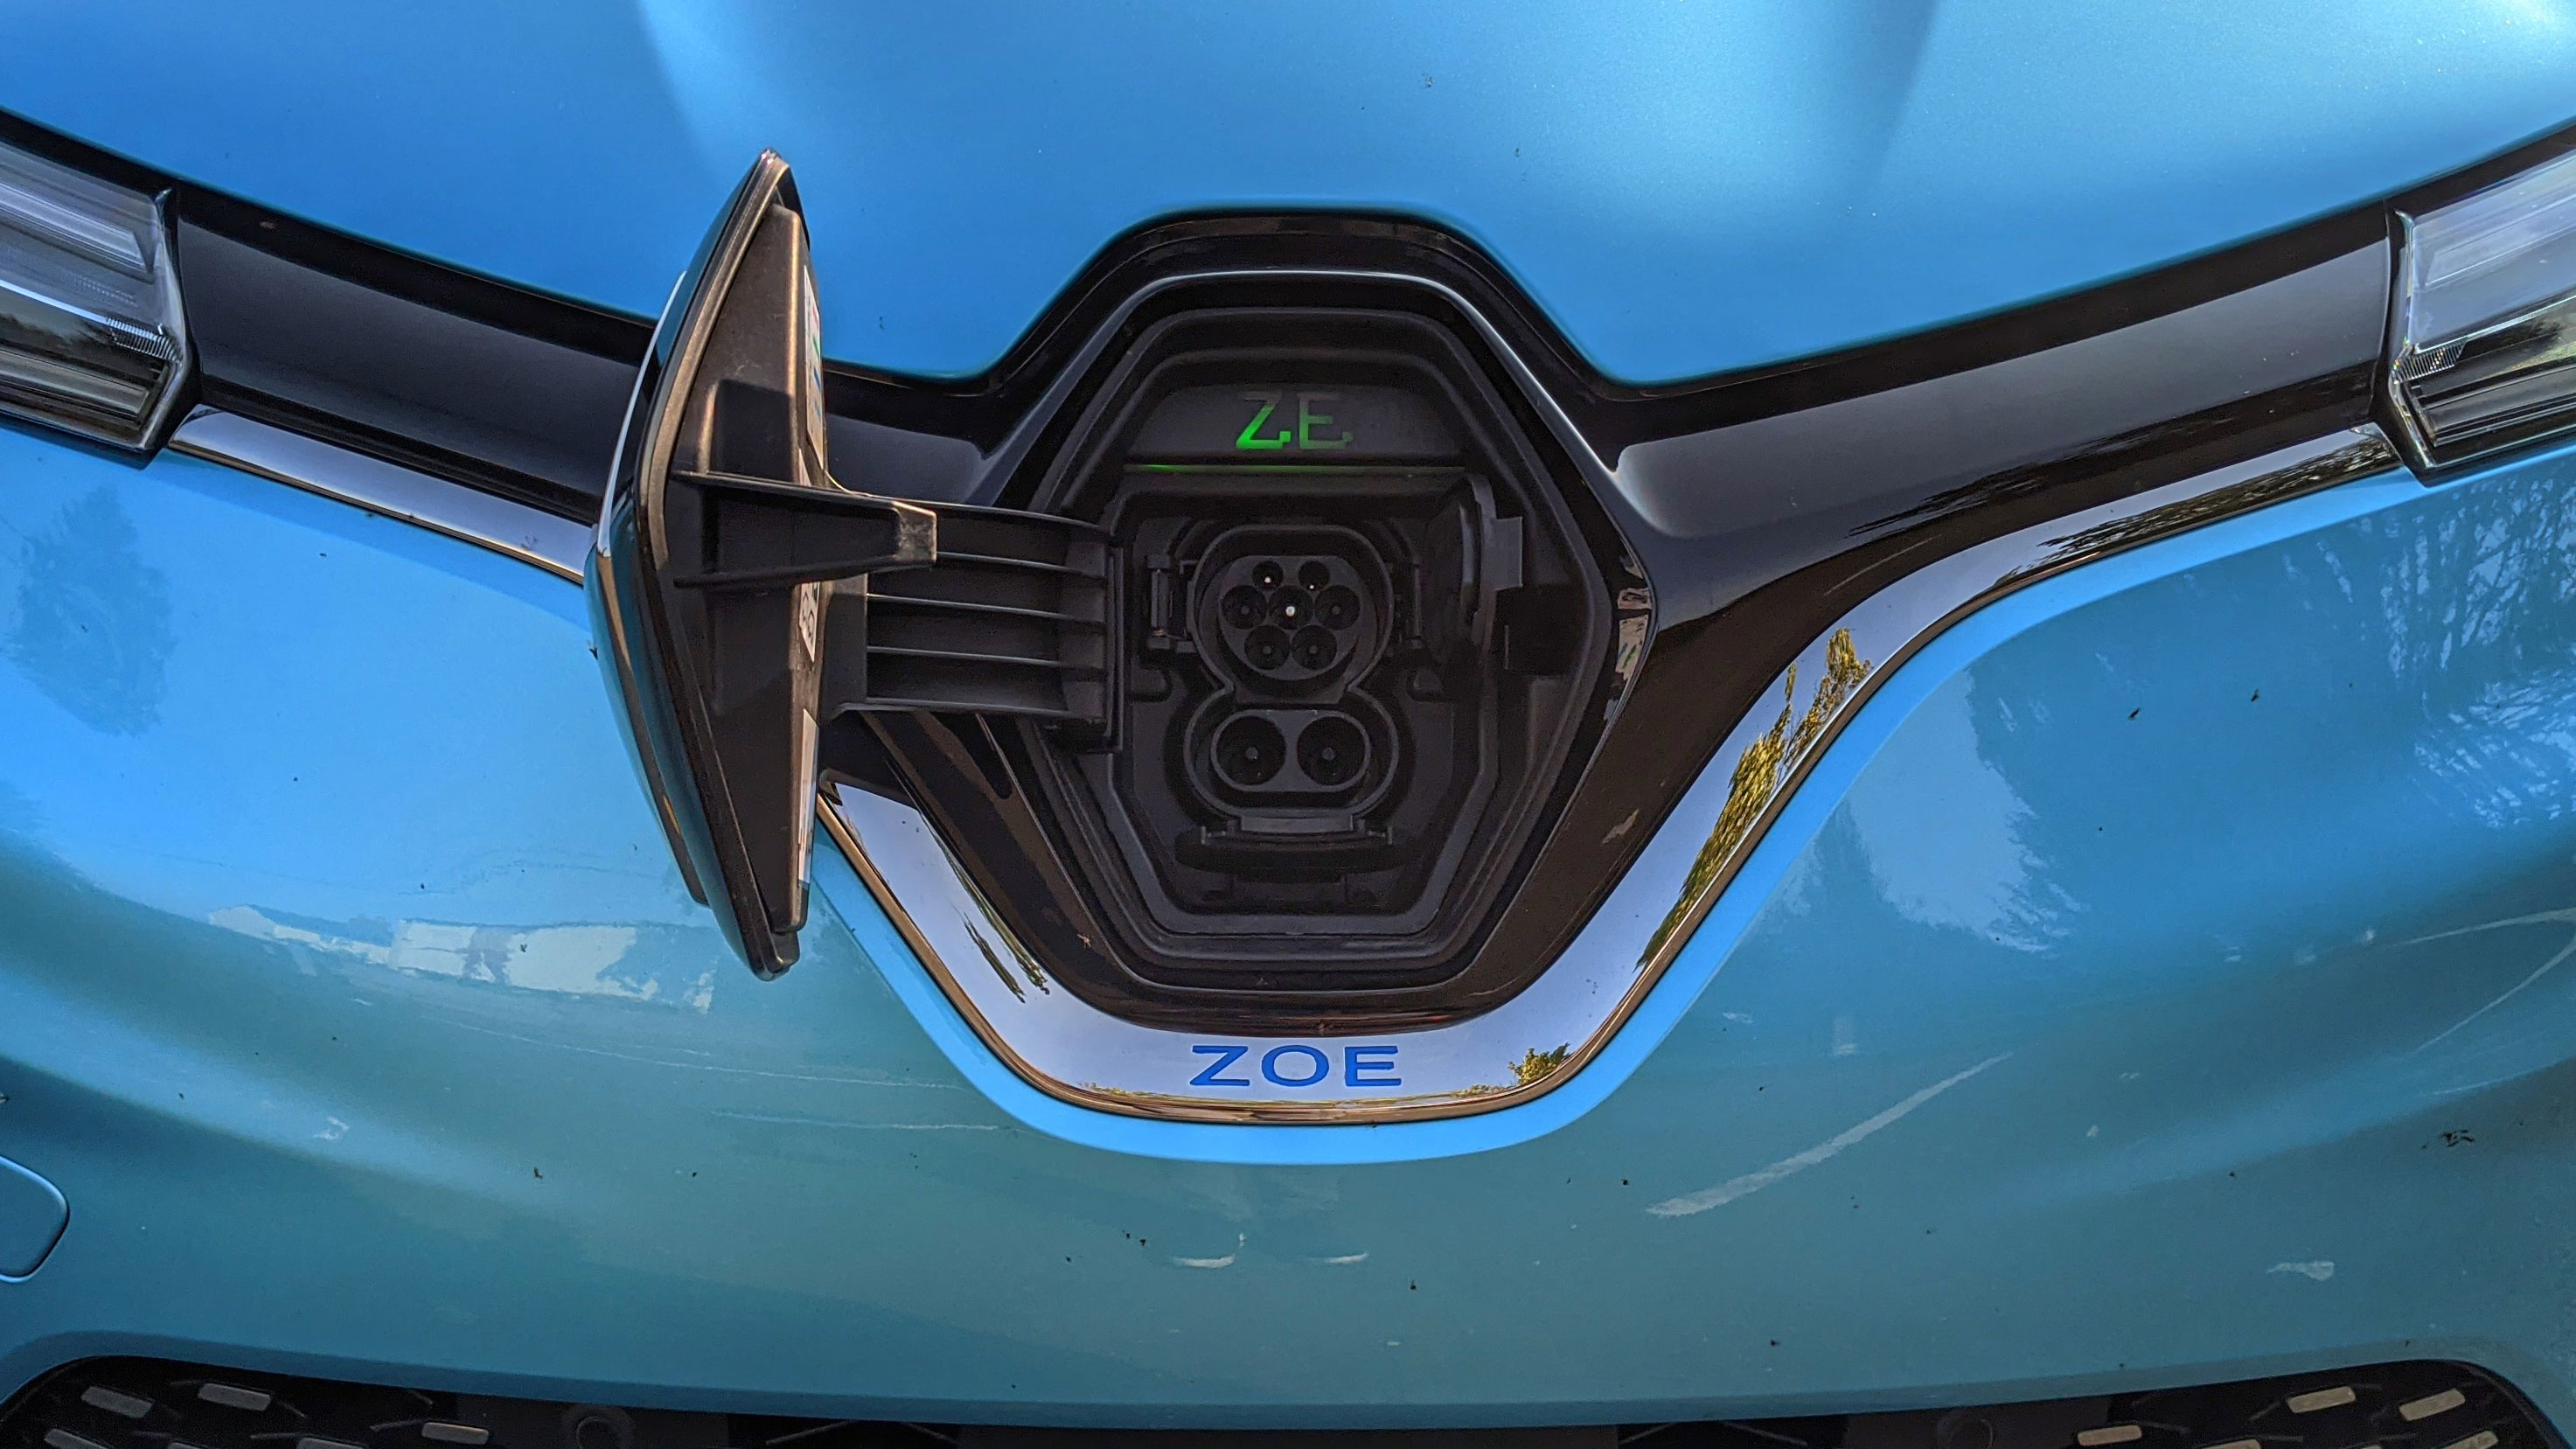 Renault Zoe a zippy electric car made for the city TechRadar